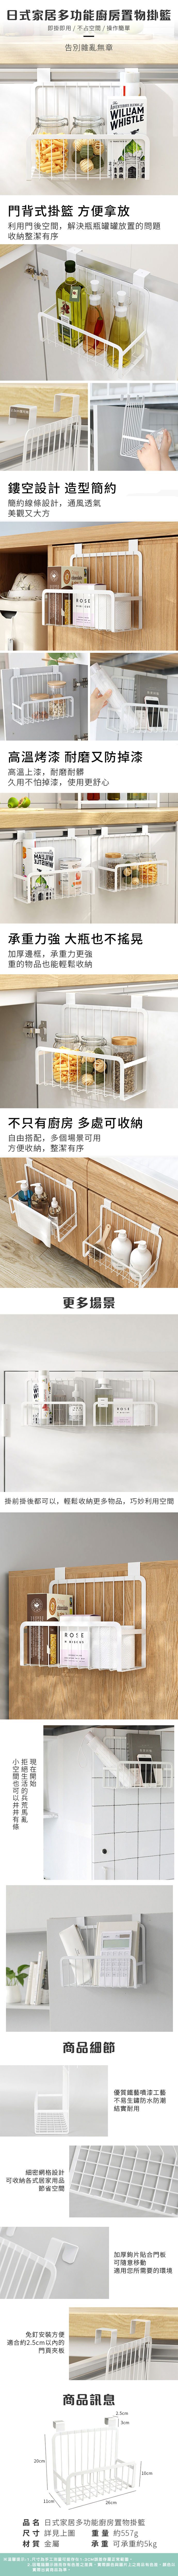 日式居家多用置物籃掛籃 掛式廚房調味品置物架 收納籃 置物籃